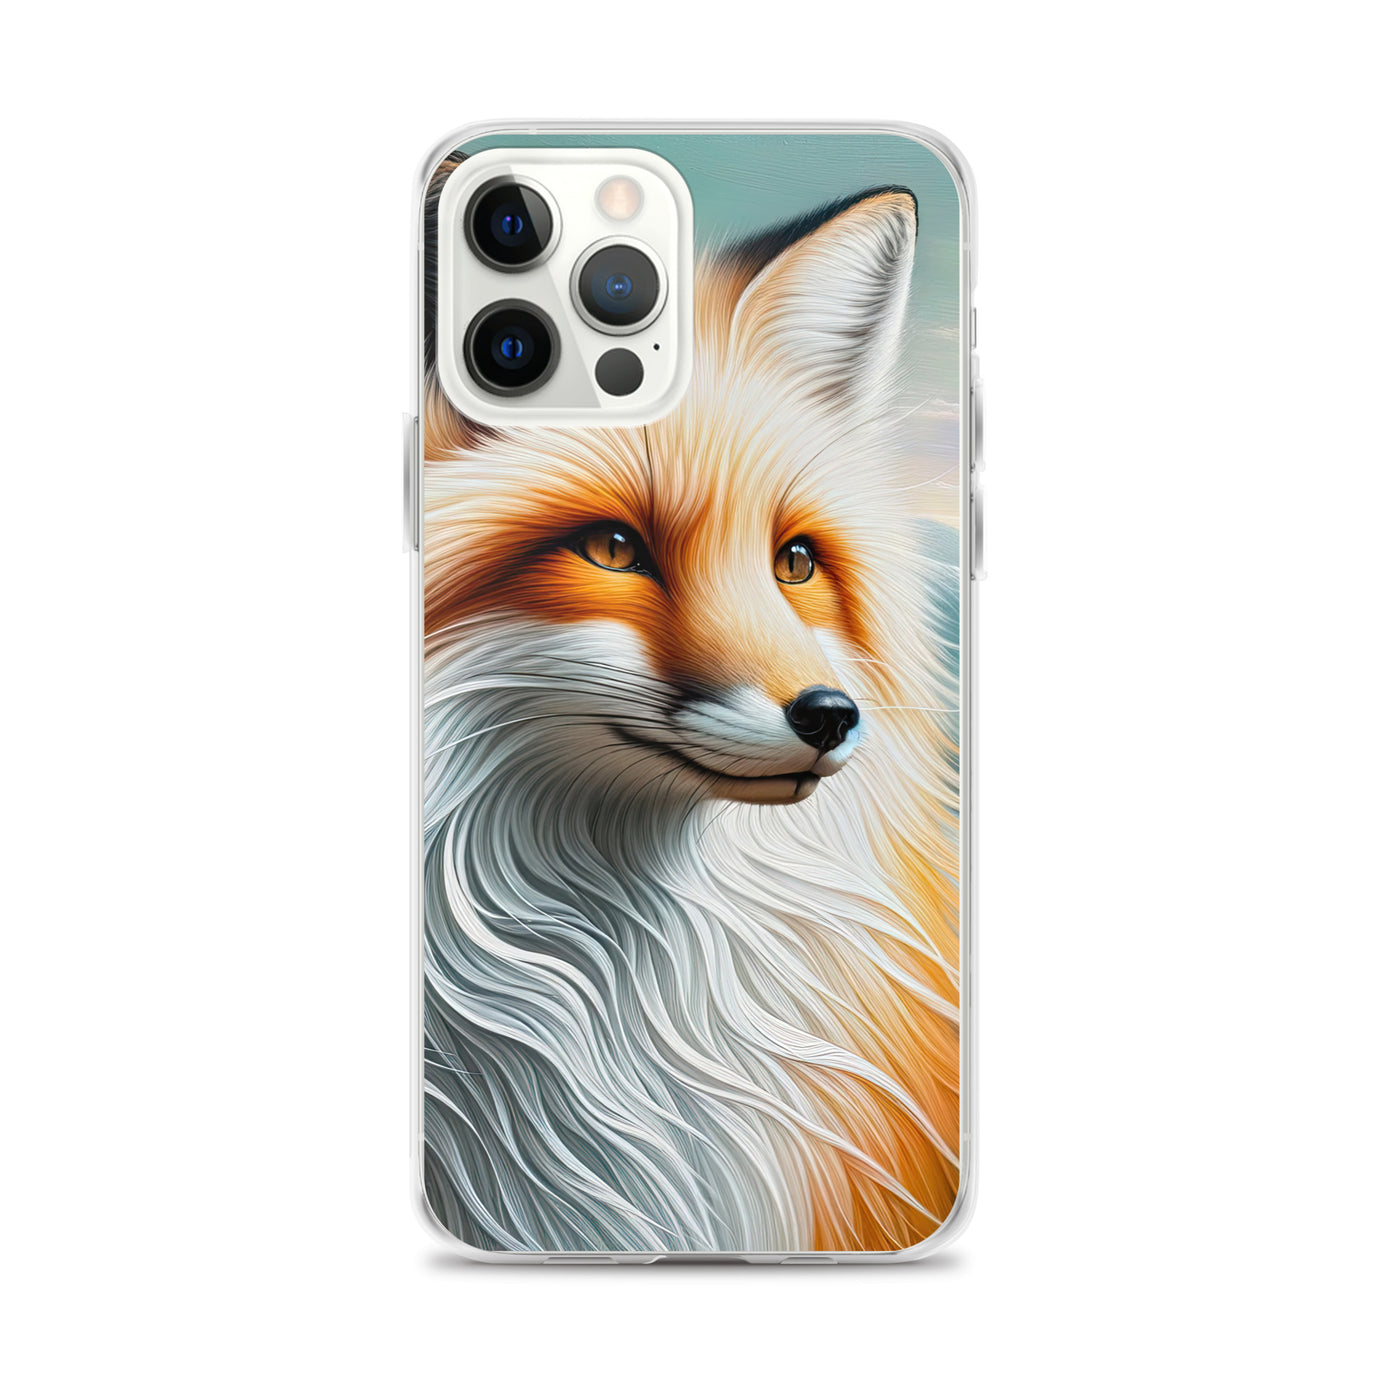 Ölgemälde eines anmutigen, intelligent blickenden Fuchses in Orange-Weiß - iPhone Schutzhülle (durchsichtig) camping xxx yyy zzz iPhone 12 Pro Max